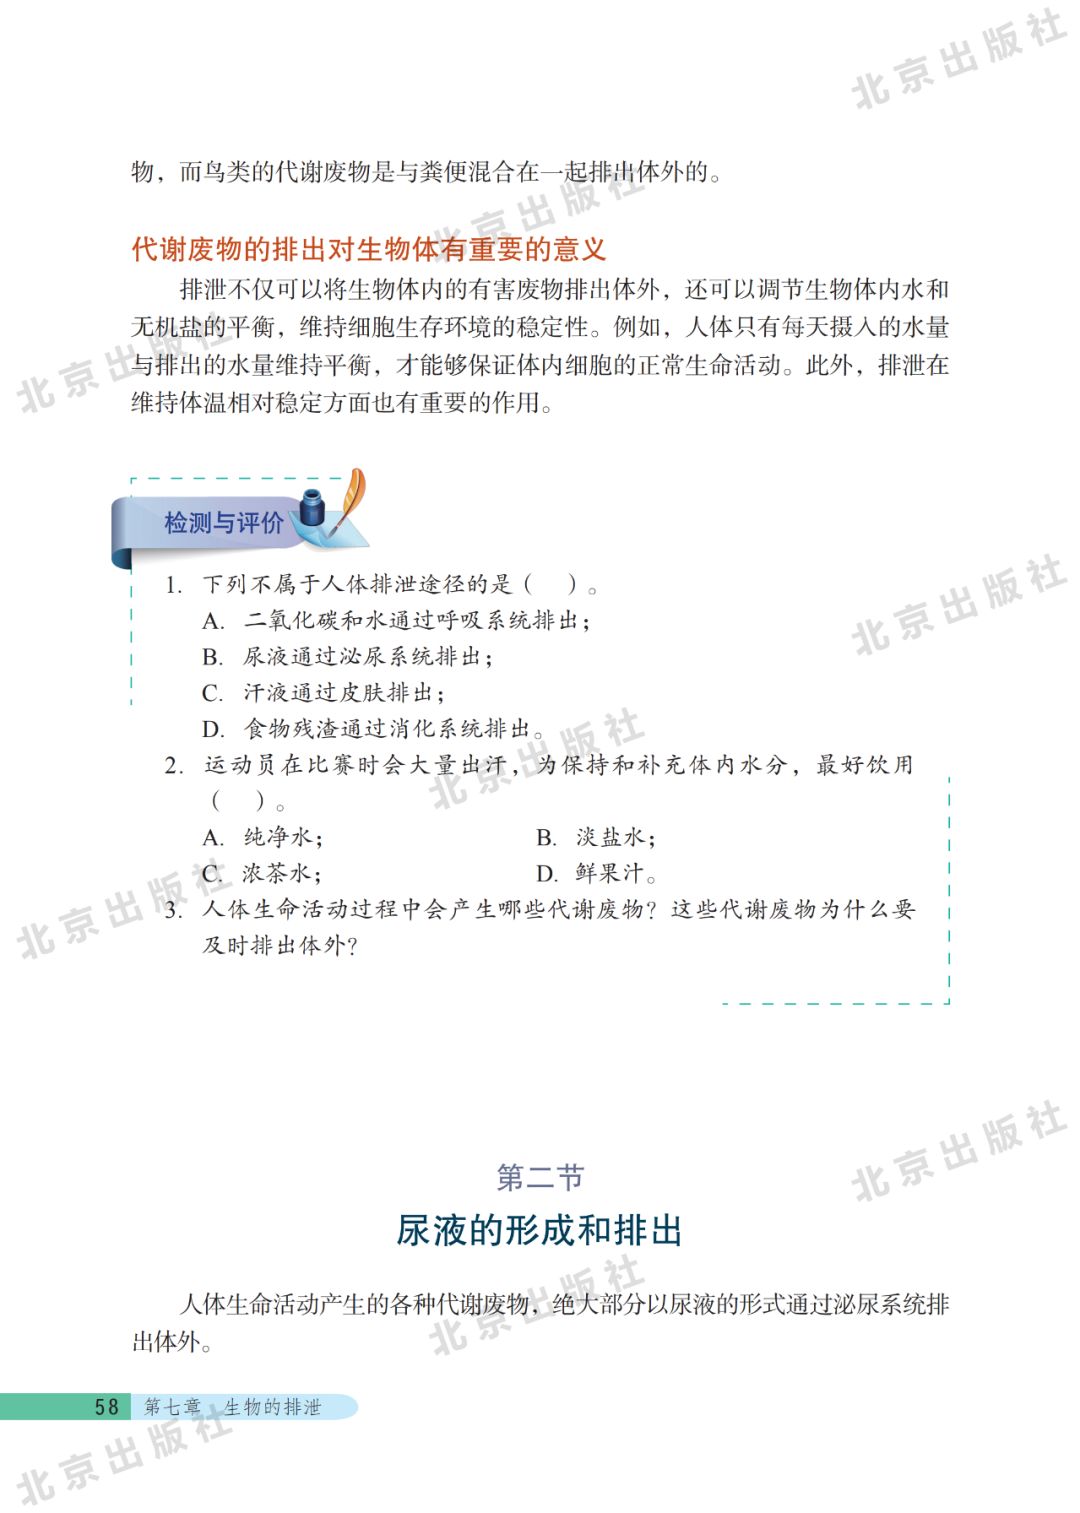 第二节尿液的形成和排出 Page58 北京版七年级生物下册电子课本 教材 教科书 好多电子课本网